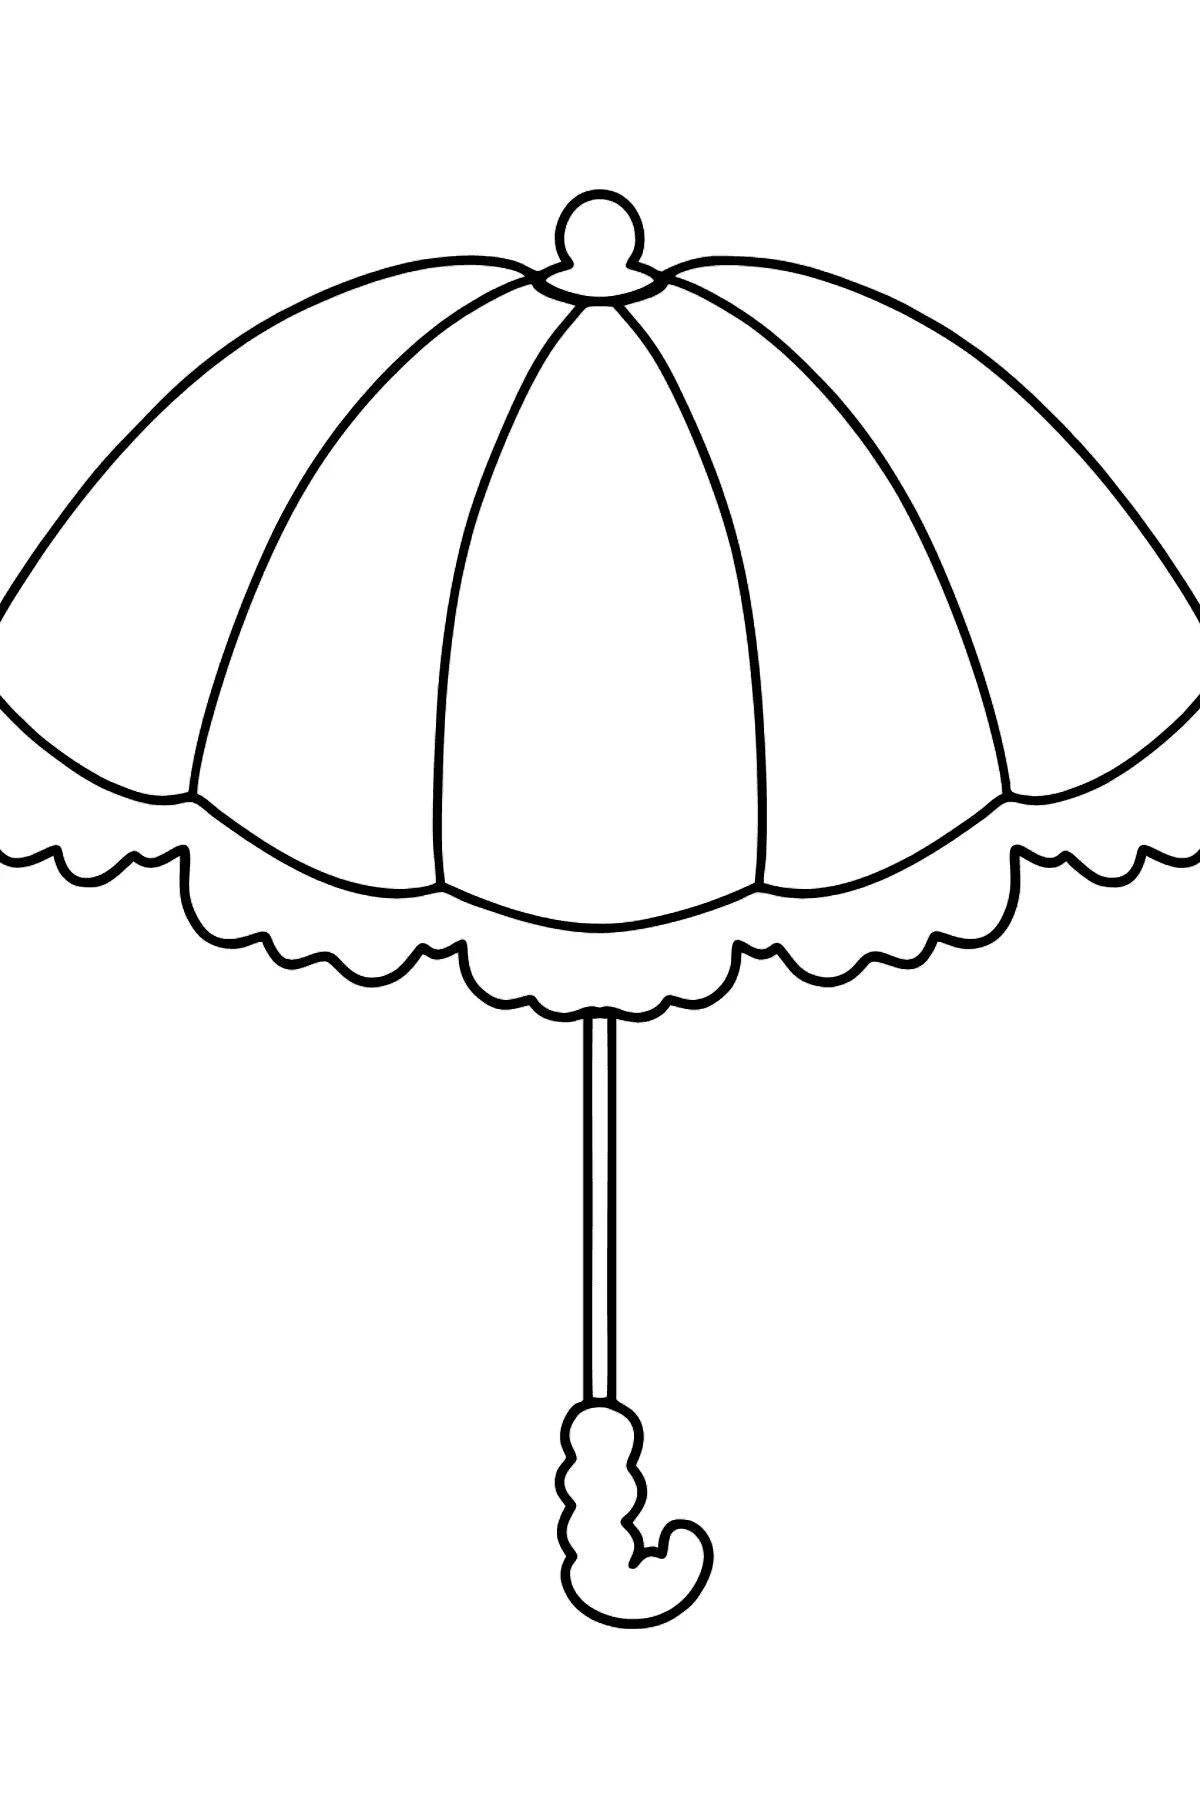 Увлекательная раскраска зонтиков для детей 4-5 лет